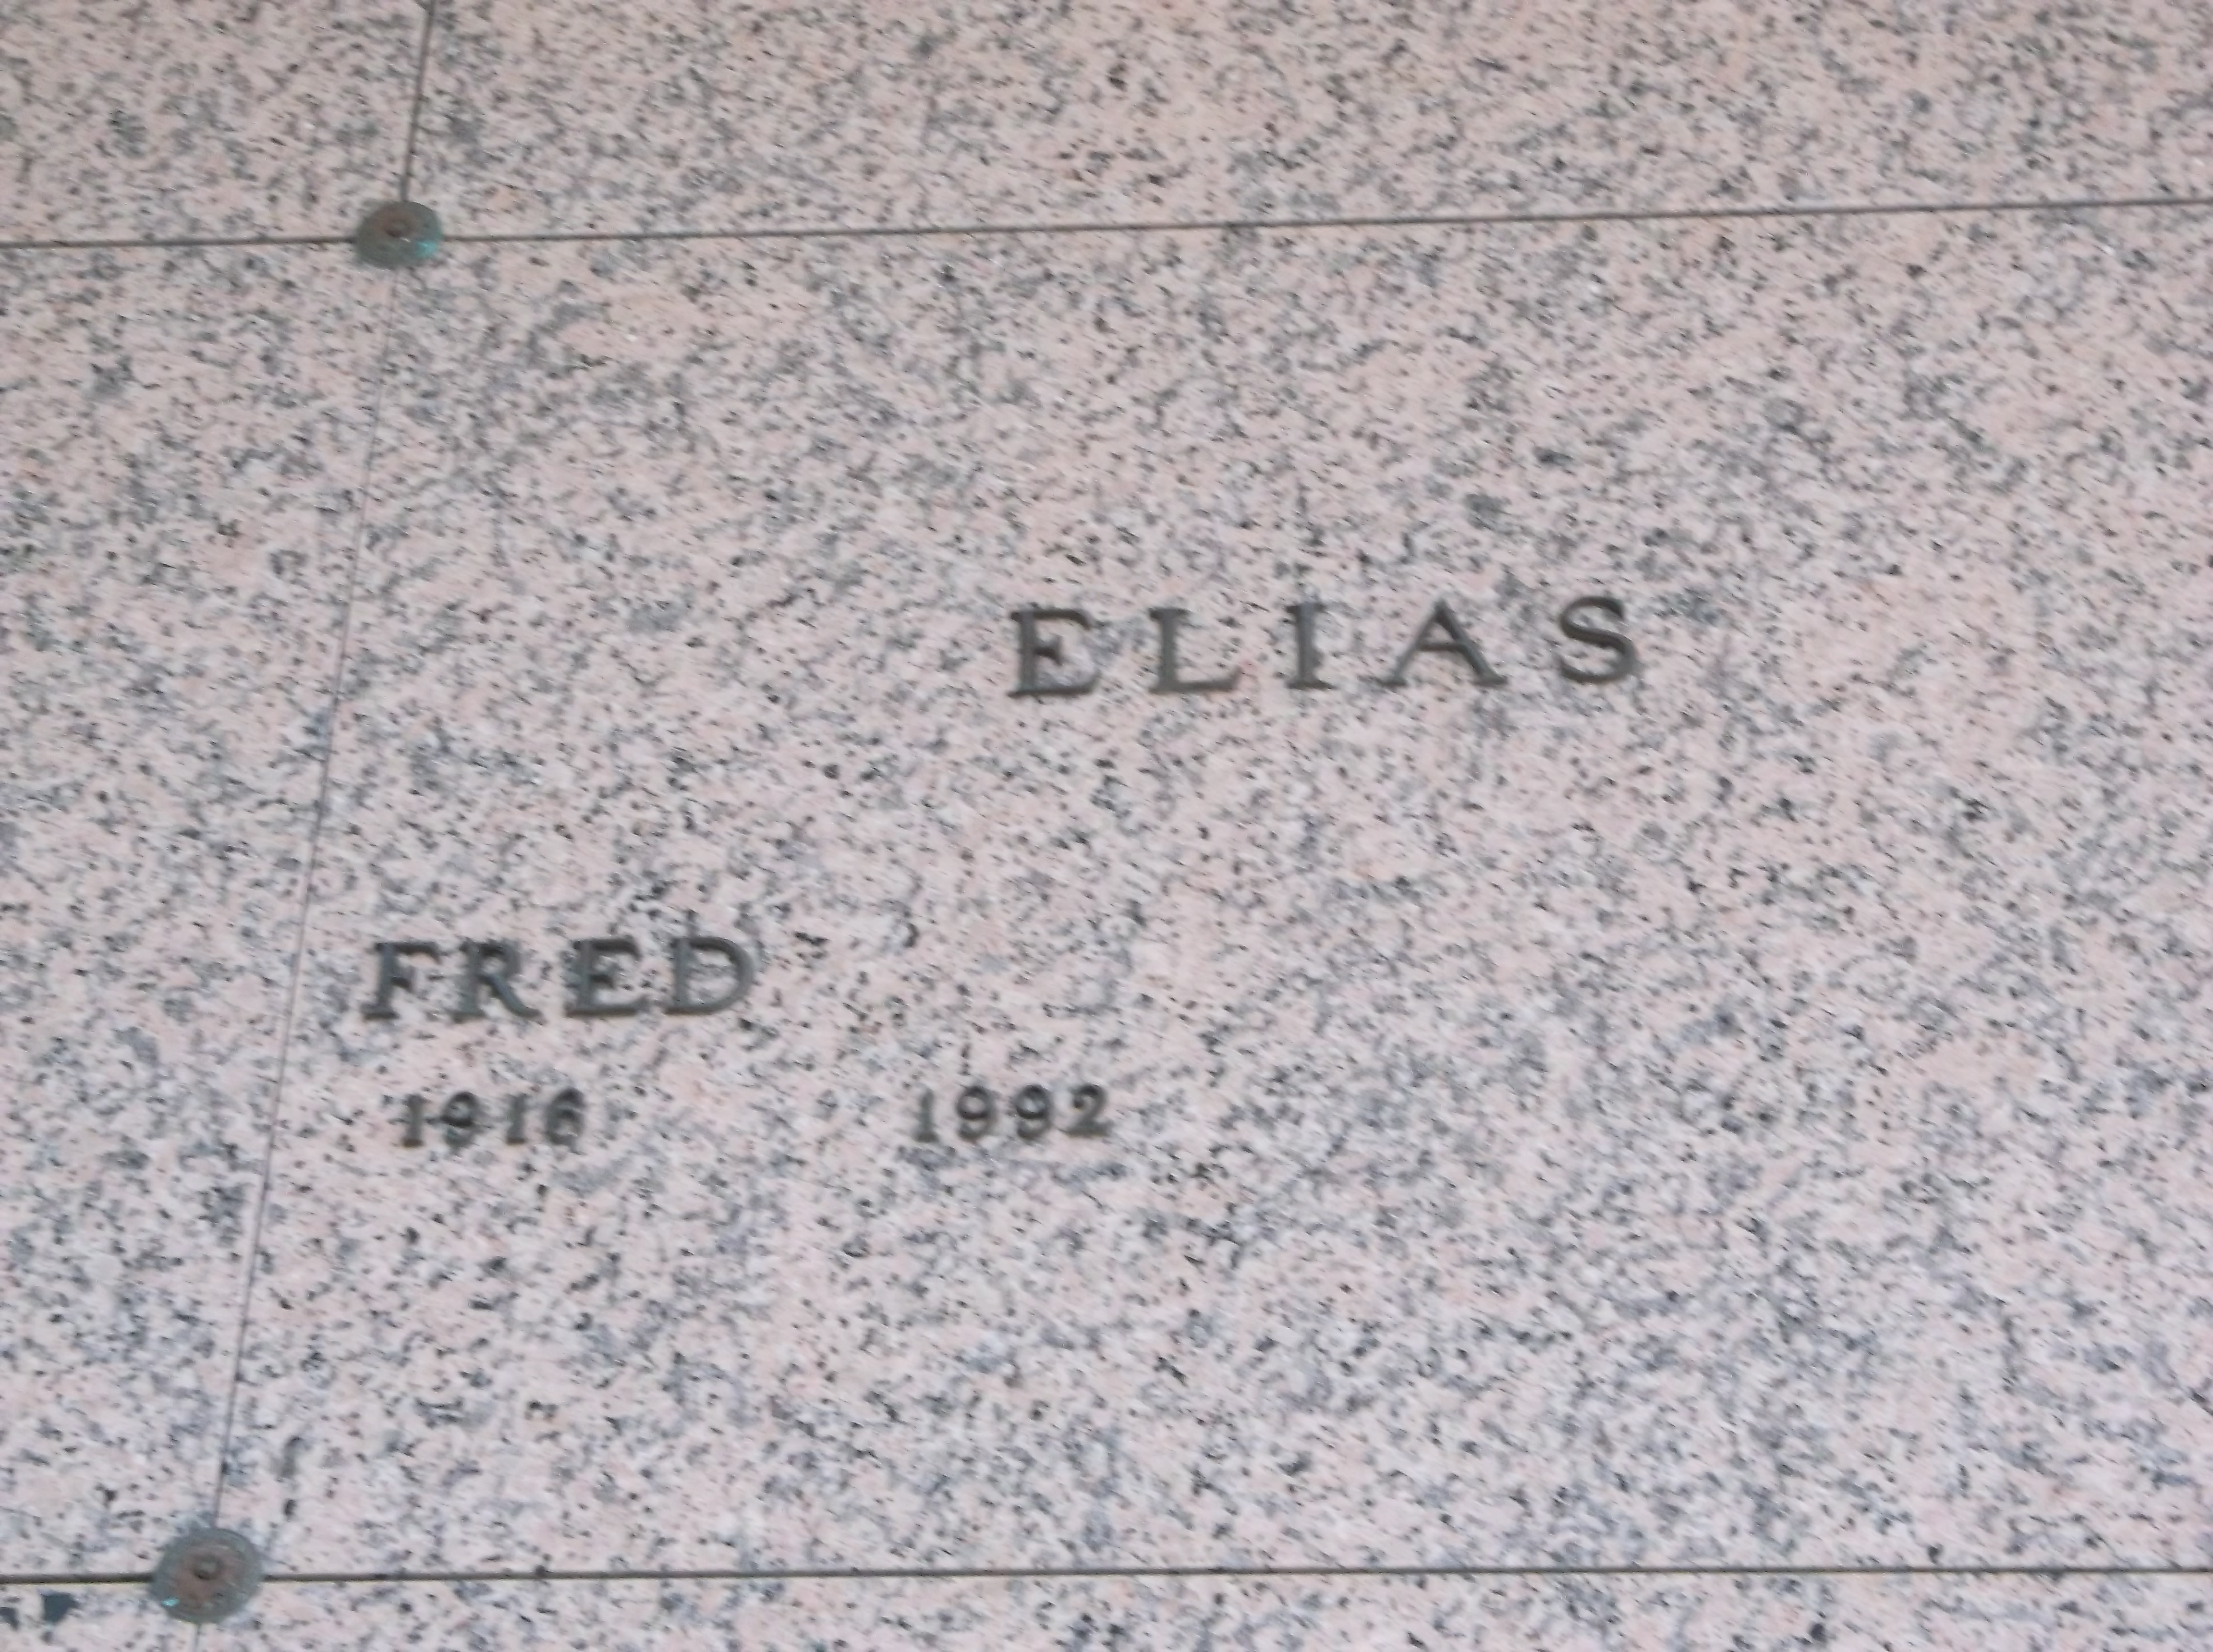 Fred Elias